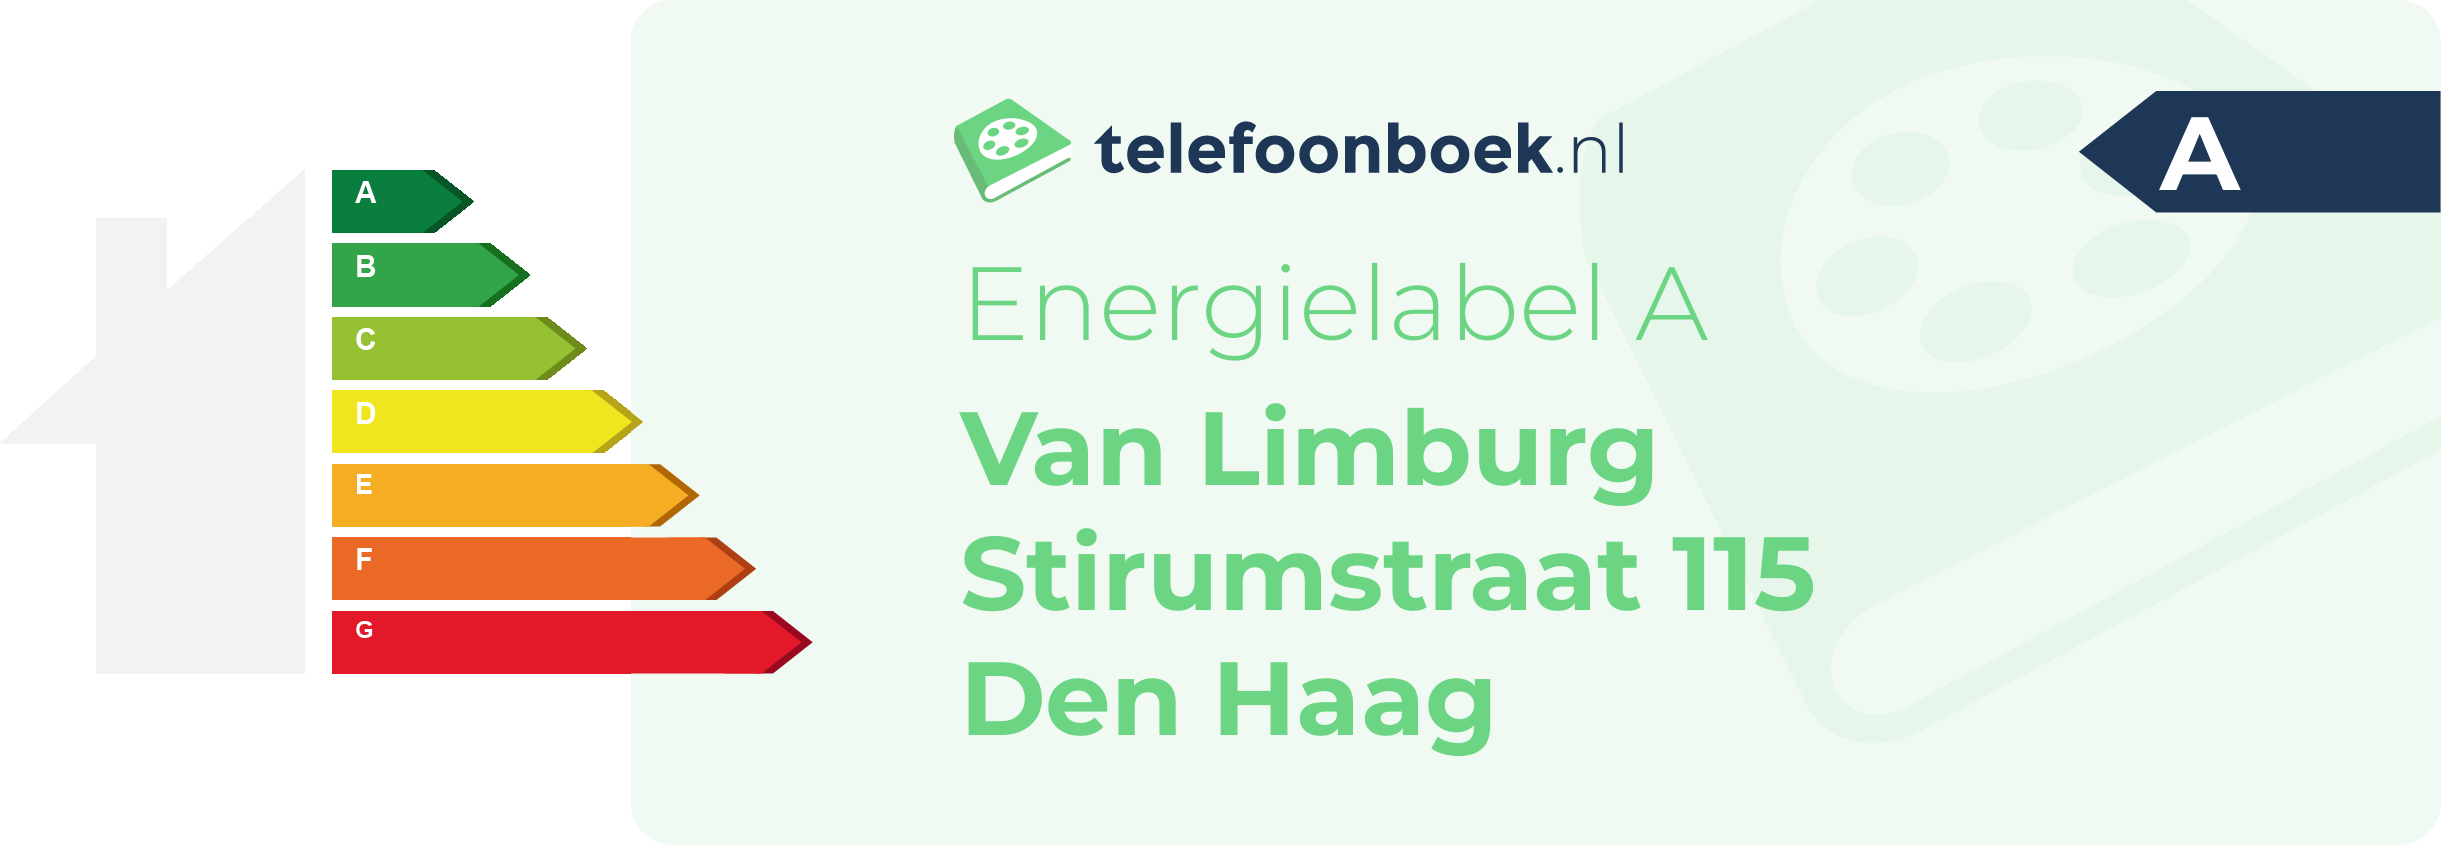 Energielabel Van Limburg Stirumstraat 115 Den Haag